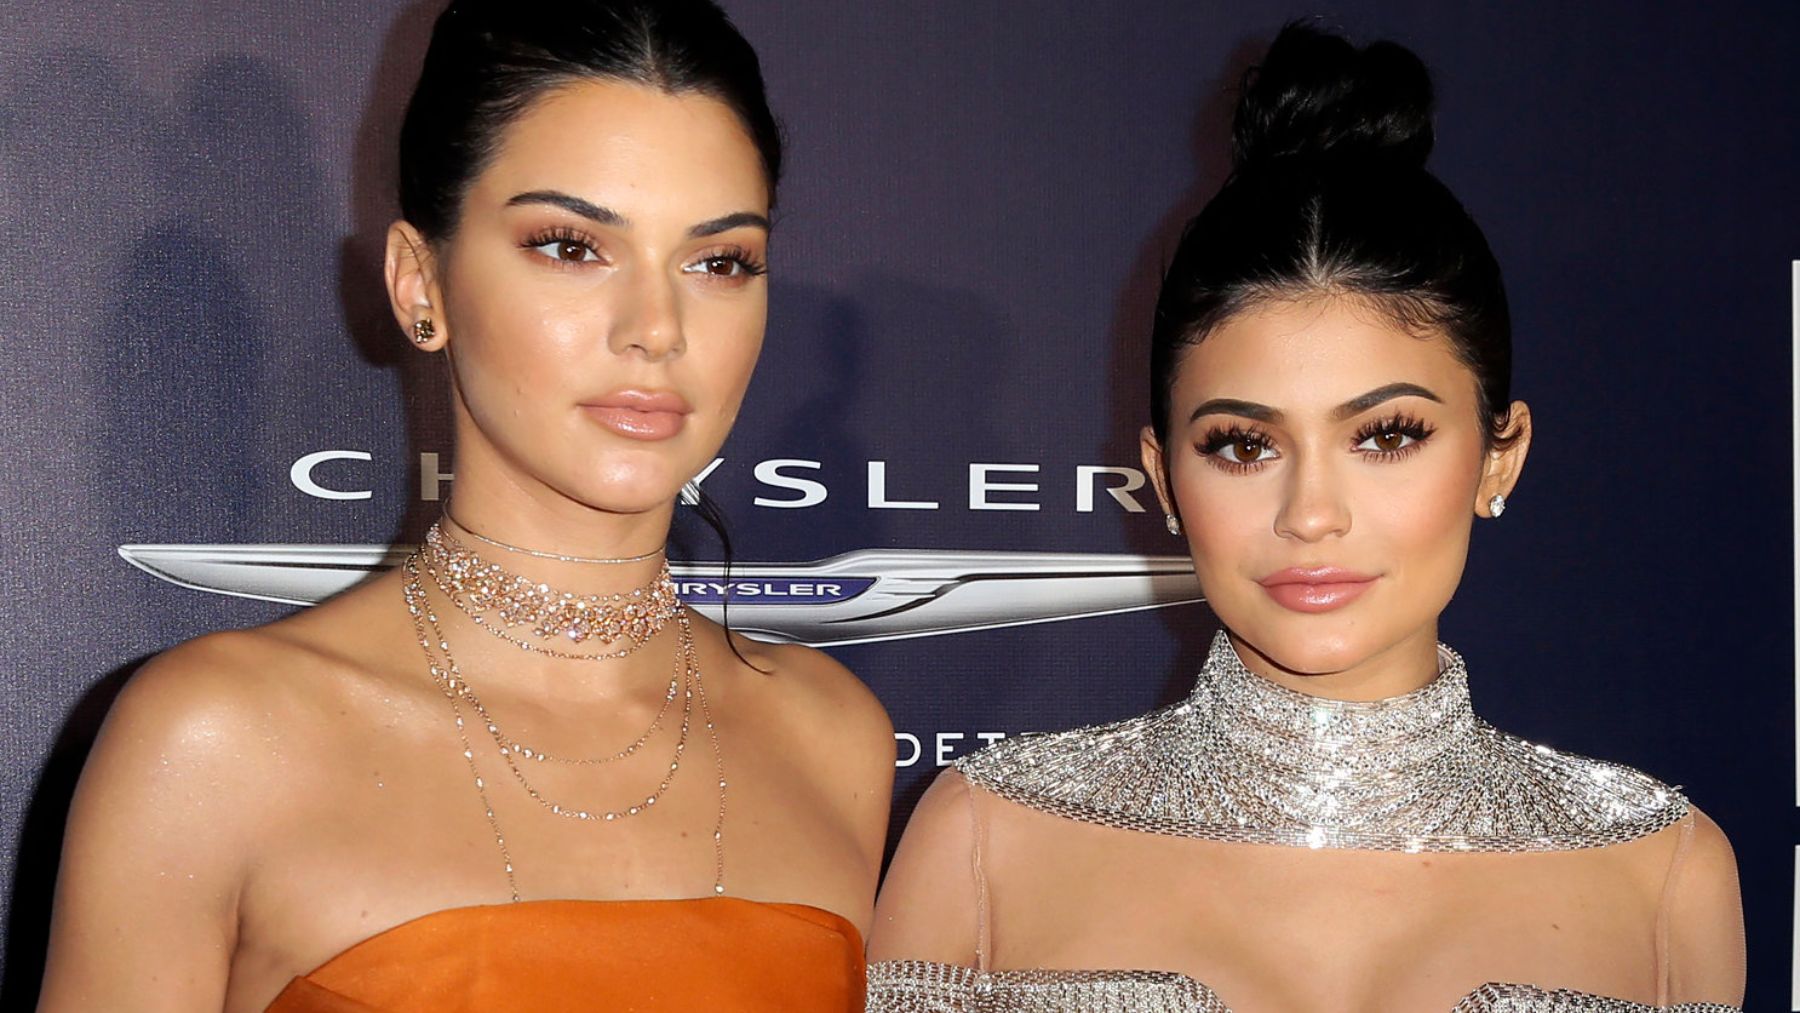 Las hemanas Jenners tienen el mayor número de seguidores que son cuentas falsas en Instagram